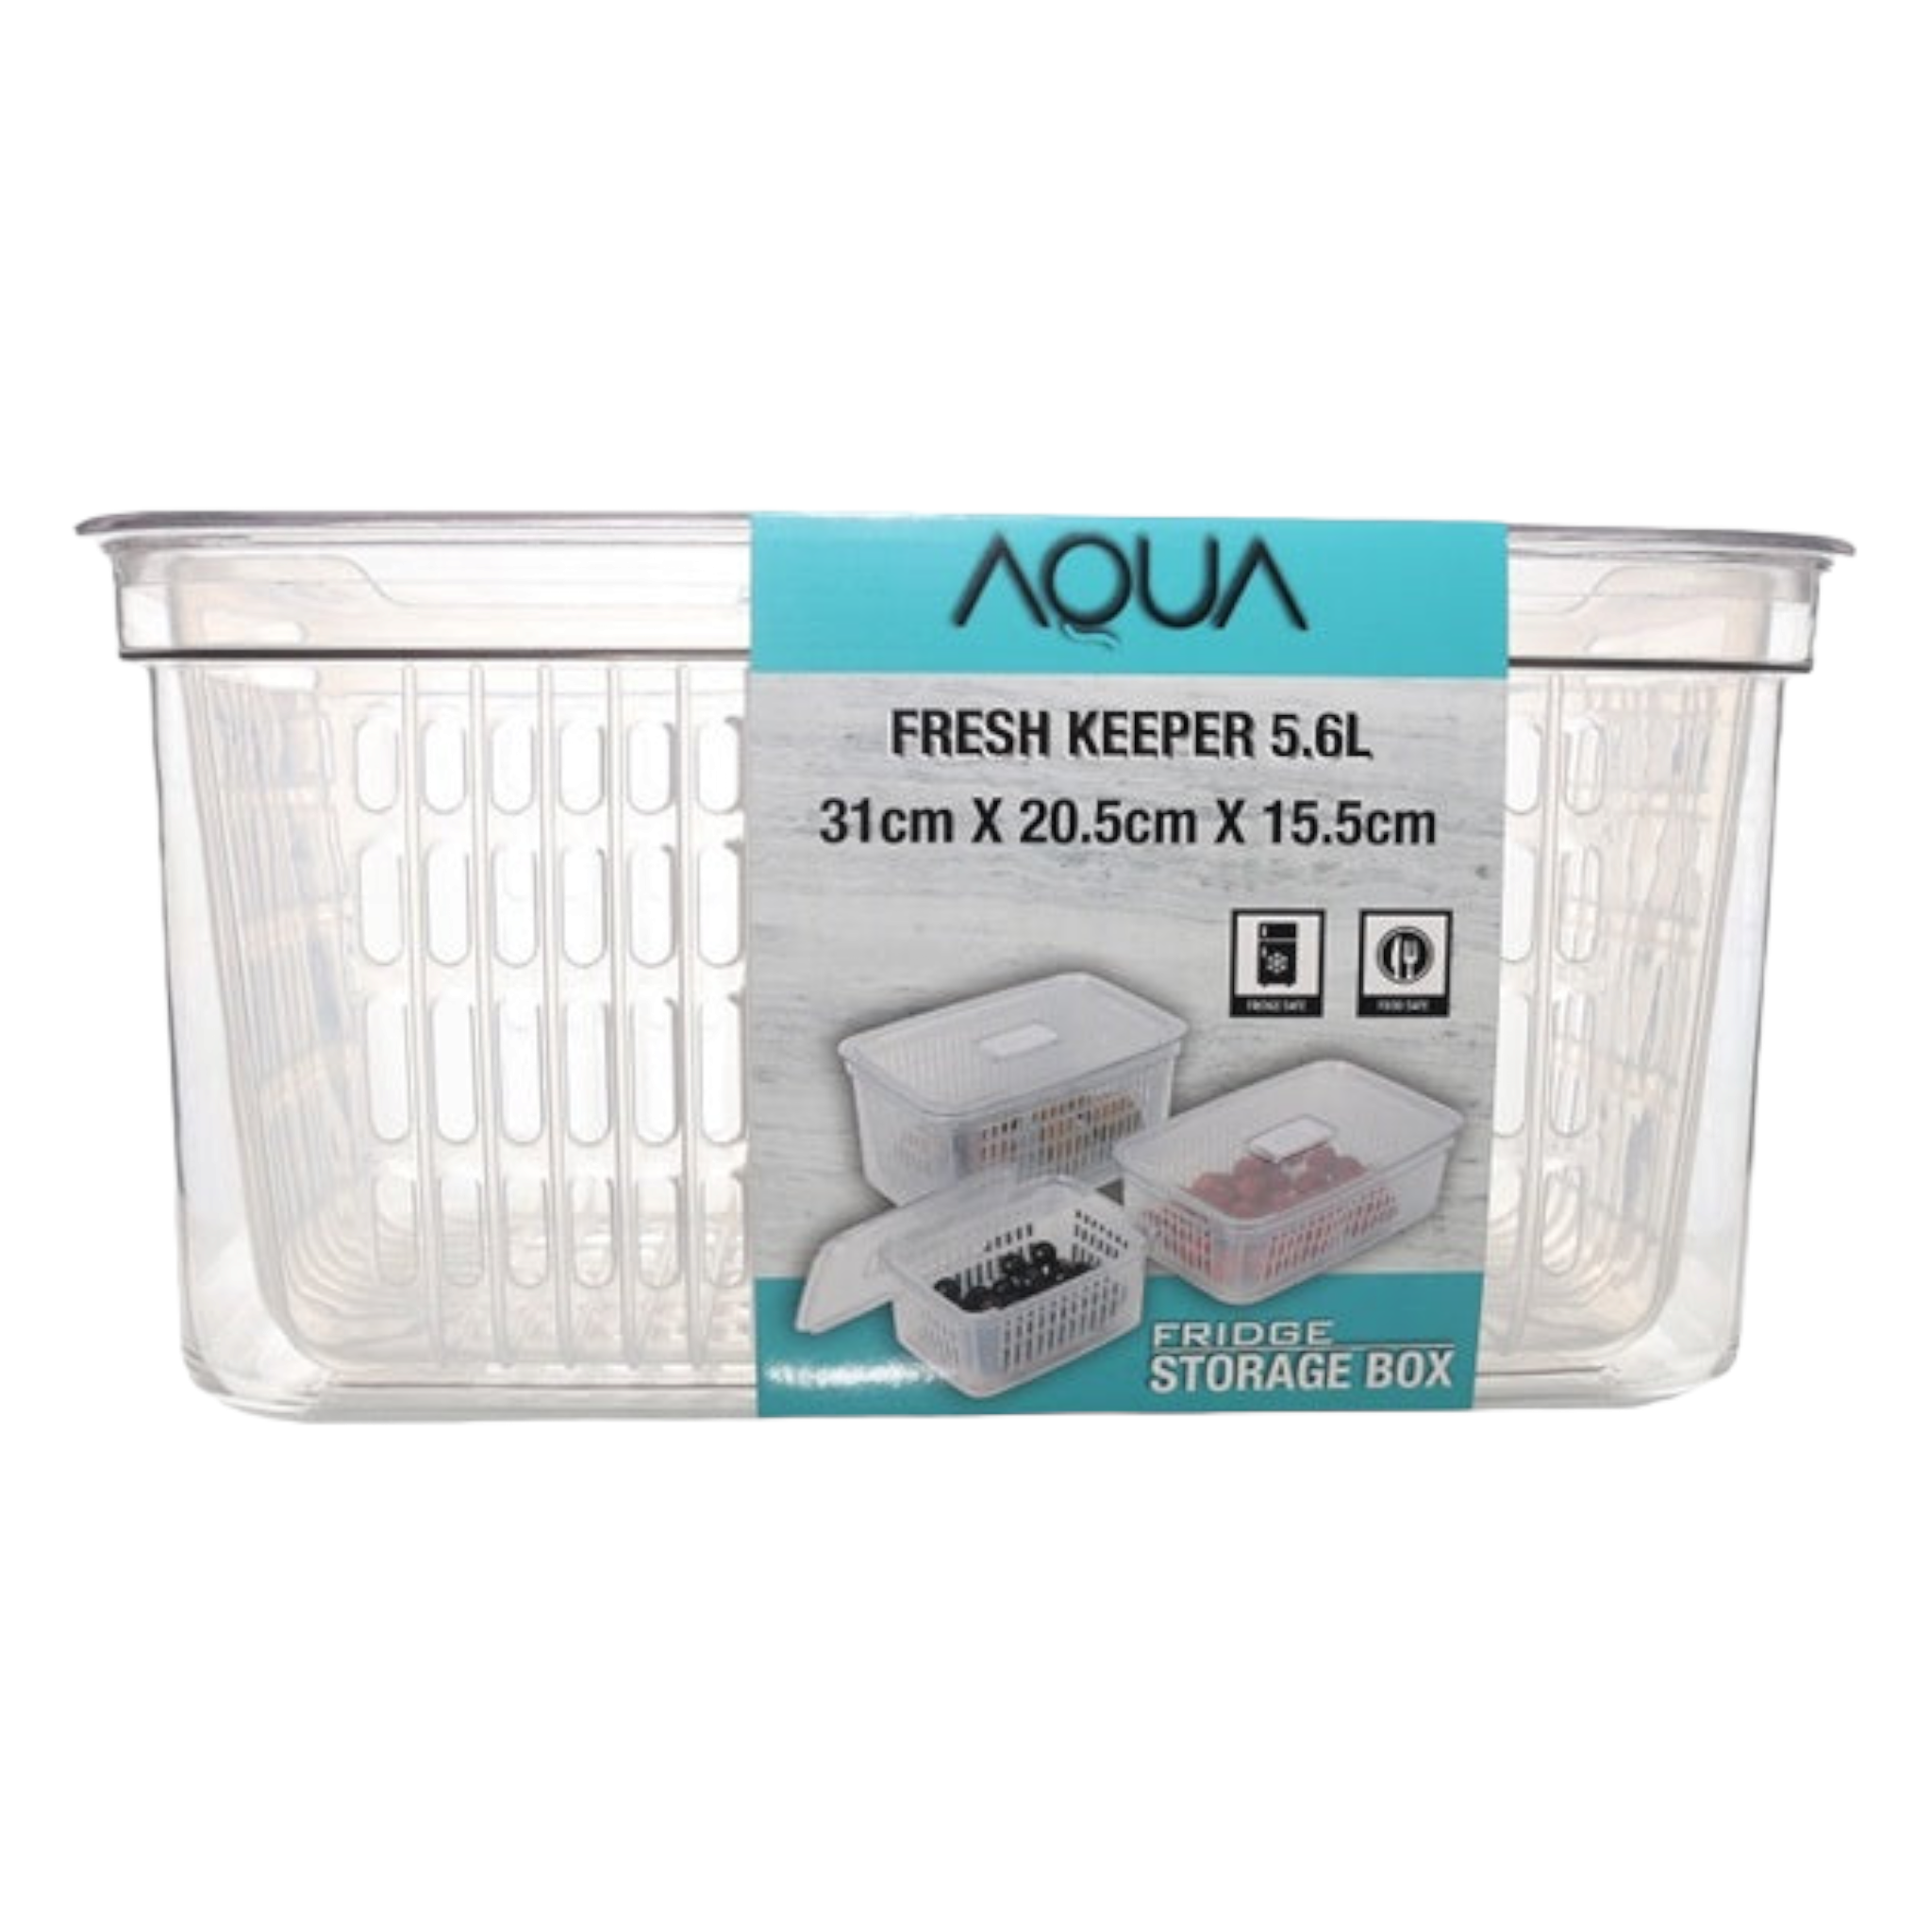 Aqua Fresh Keeper Box 5.6L Fridge Storage Box 10360